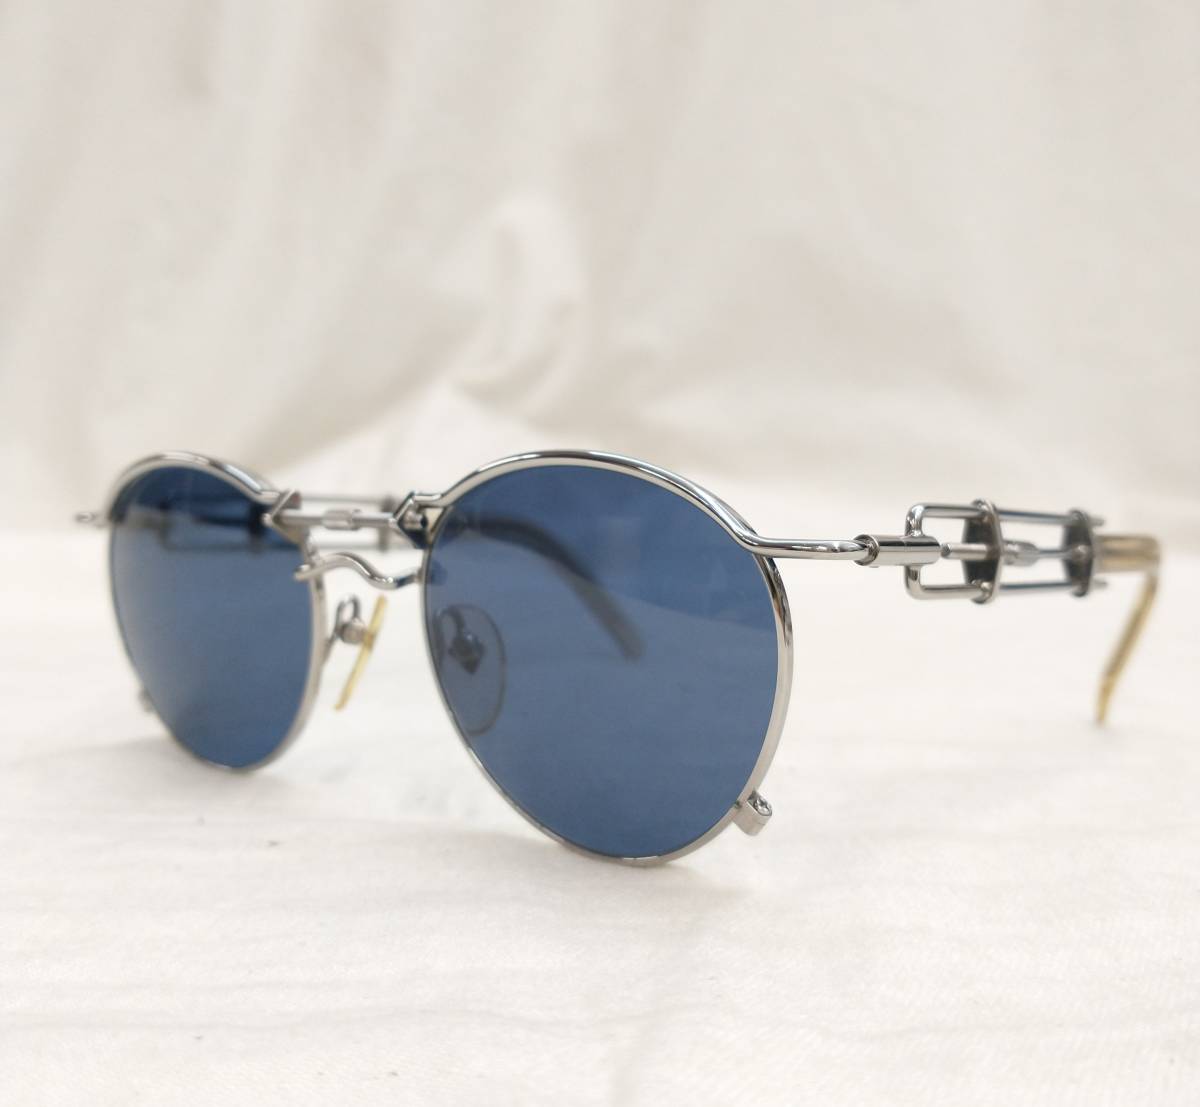 Jean Paul GAULTIER Jean-Paul Gaultier солнцезащитные очки синий голубой серебряный 56-0174 сделано в Японии магазин квитанция возможно 